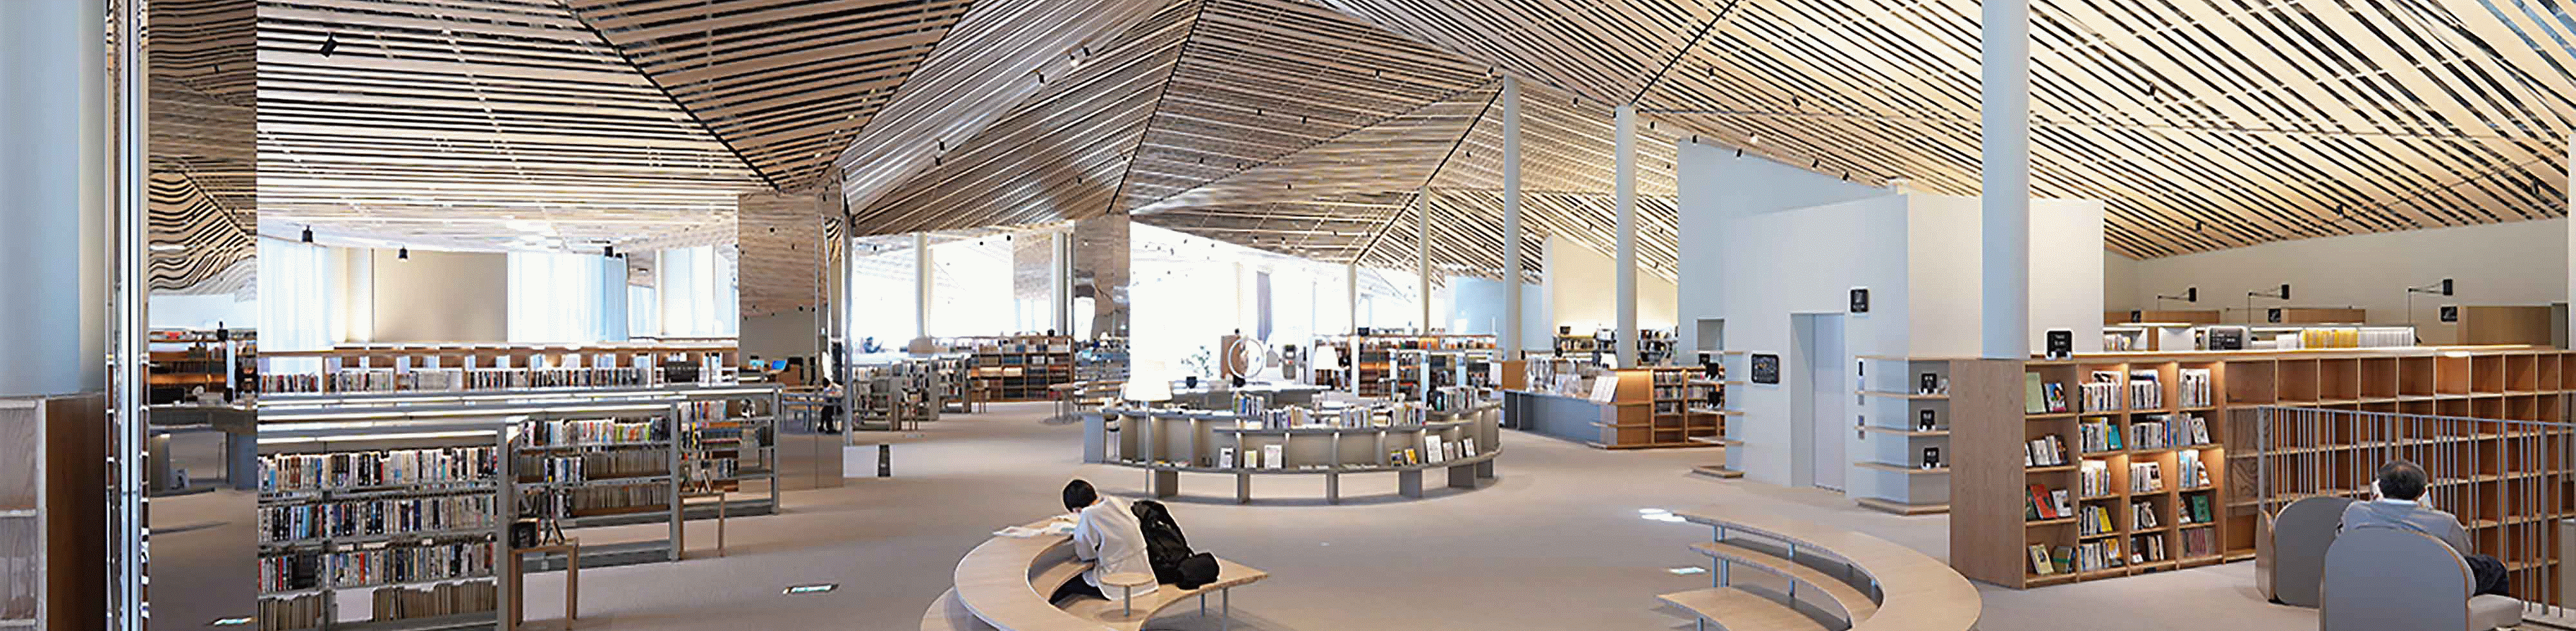 Afbeelding van het ontwerp van het interieur van een grote bibliotheek, met een plafond met veel rechte houten planken, met resolutie tot elke hoek van het scherm